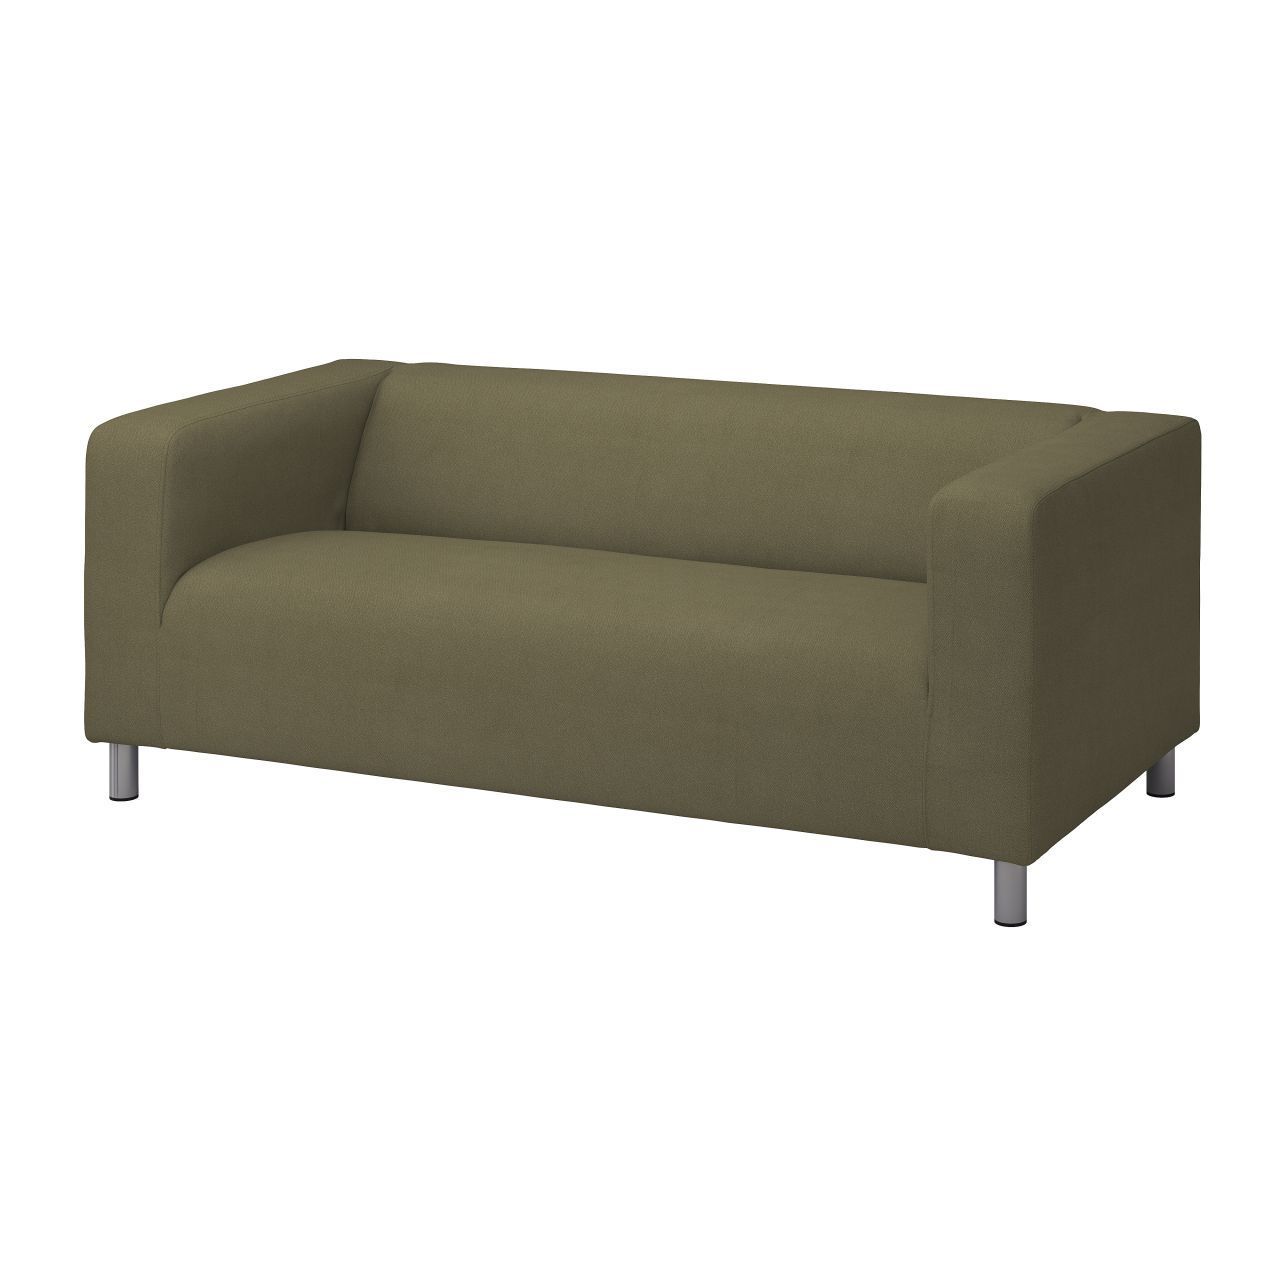 Das Klippan Sofa von Ikea ist ein Klassiker. Es verdankt seinen Namen dem schwedischen Wort für Felsen oder ruhender Pol. Zudem ist es ein Ort in Schweden.